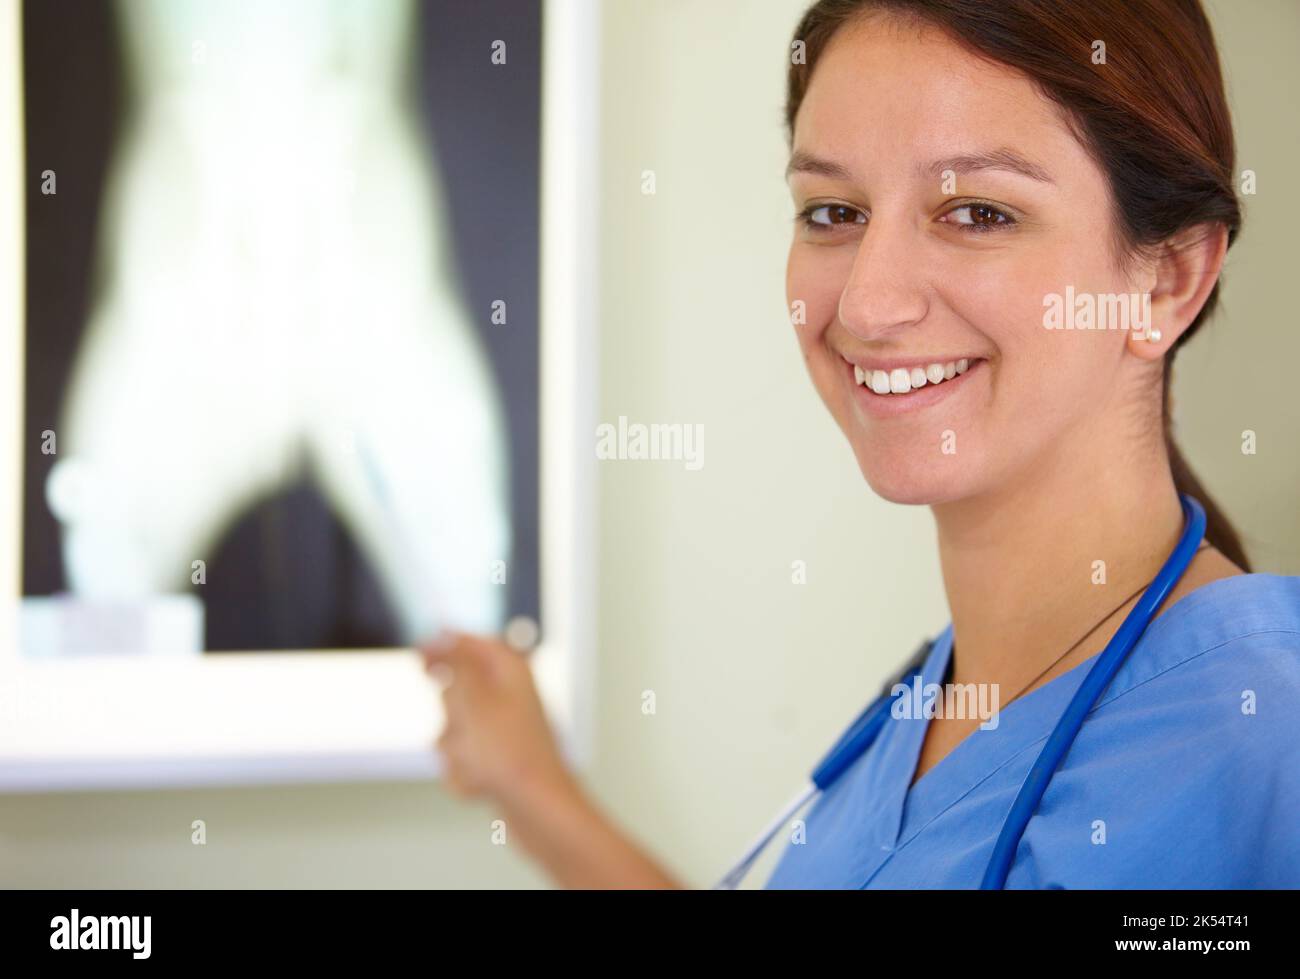 Das Krankenhaus ist mein zweites Zuhause. Porträt eines lächelnden Medizinstudenten, der auf ein Bild einer Röntgenaufnahme zeigt. Stockfoto